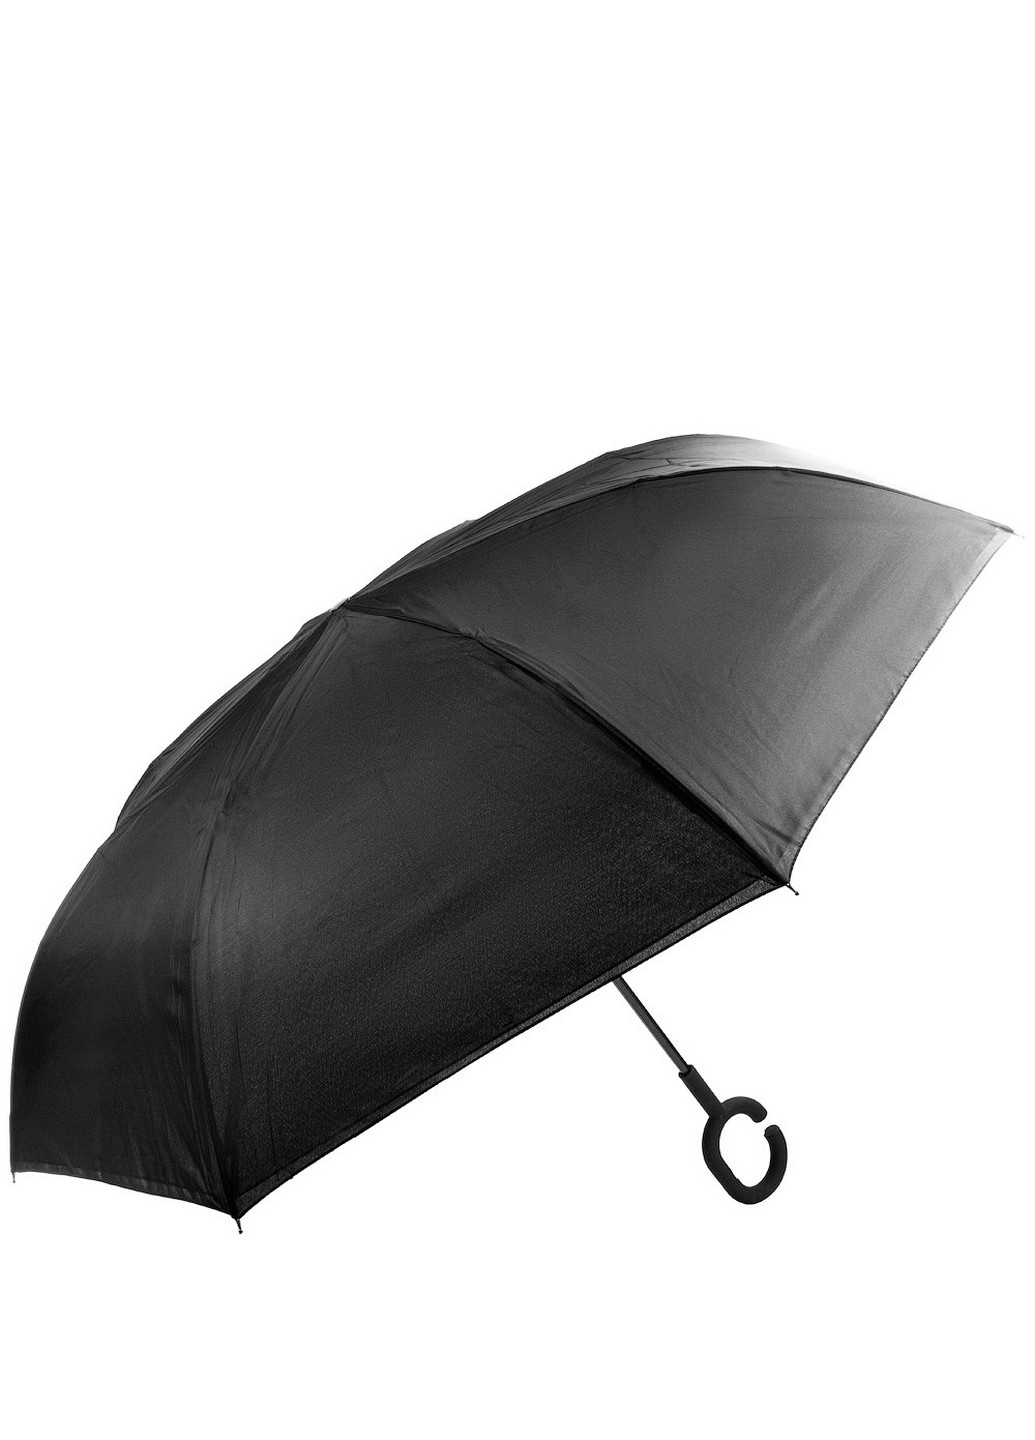 Женский зонт-трость механический 108 см ArtRain (260330148)